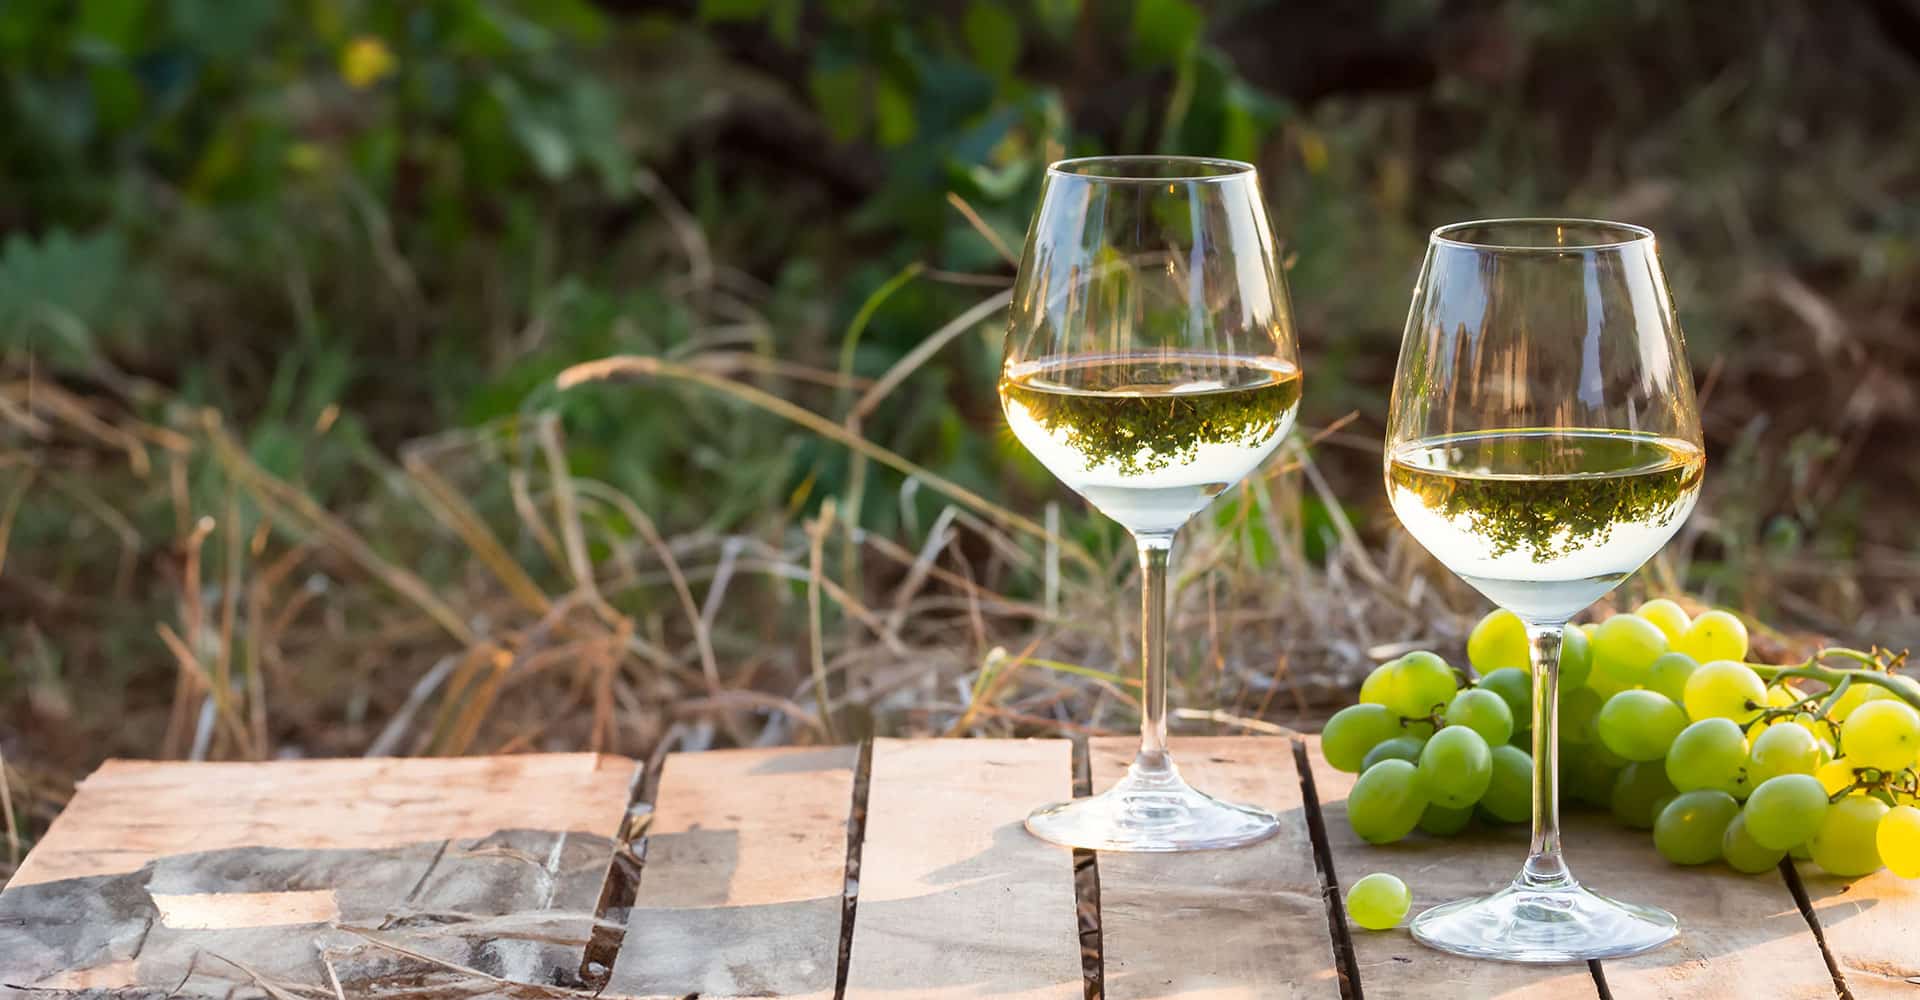 Deux verres de vin blanc et une grappe de raison sur une table en bois à l'extérieur.